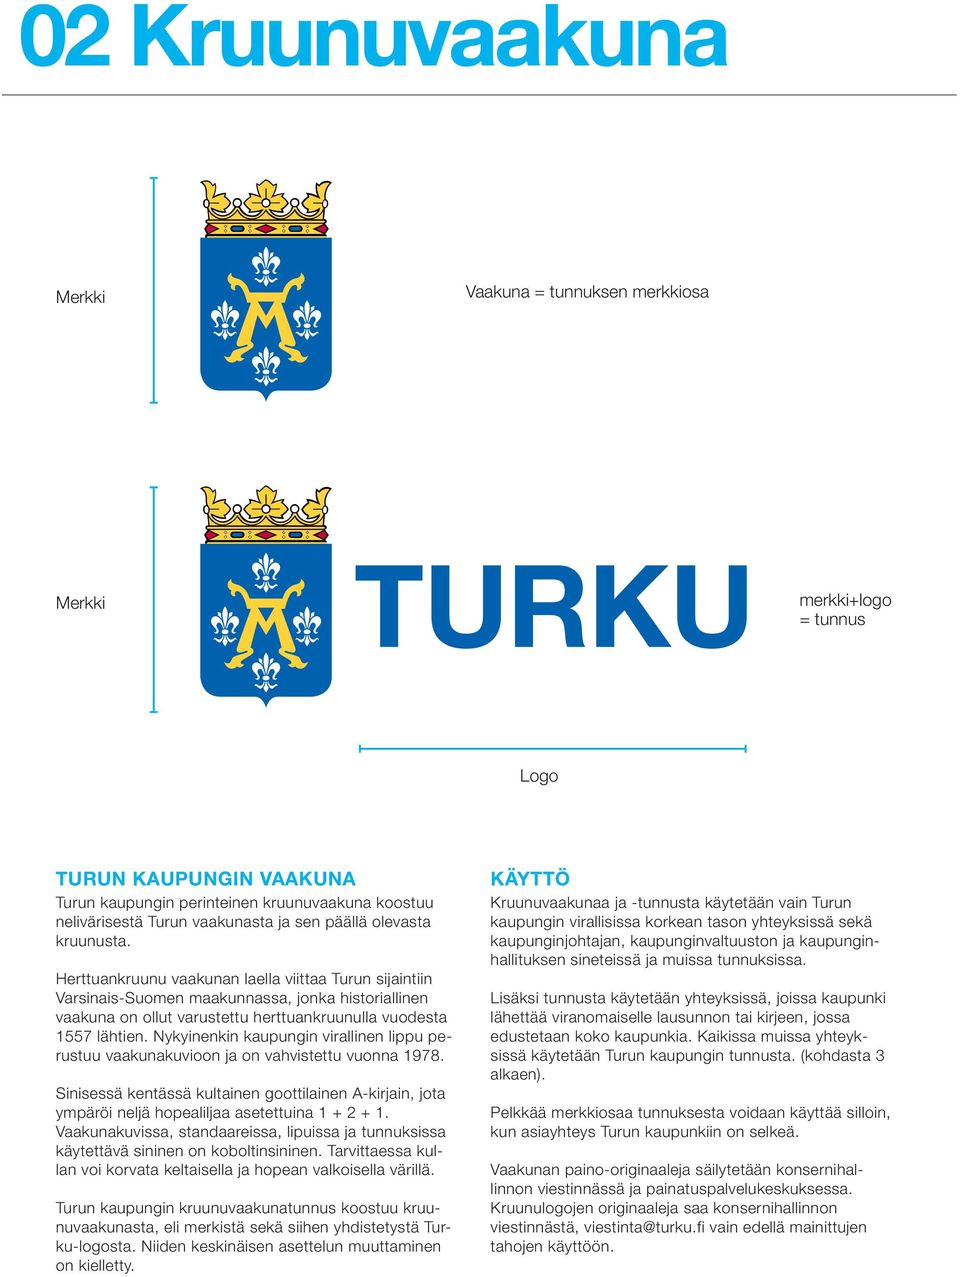 Herttuankruunu vaakunan laella viittaa Turun sijaintiin Varsinais-Suomen maakunnassa, jonka historiallinen vaakuna on ollut varustettu herttuankruunulla vuodesta 1557 lähtien.